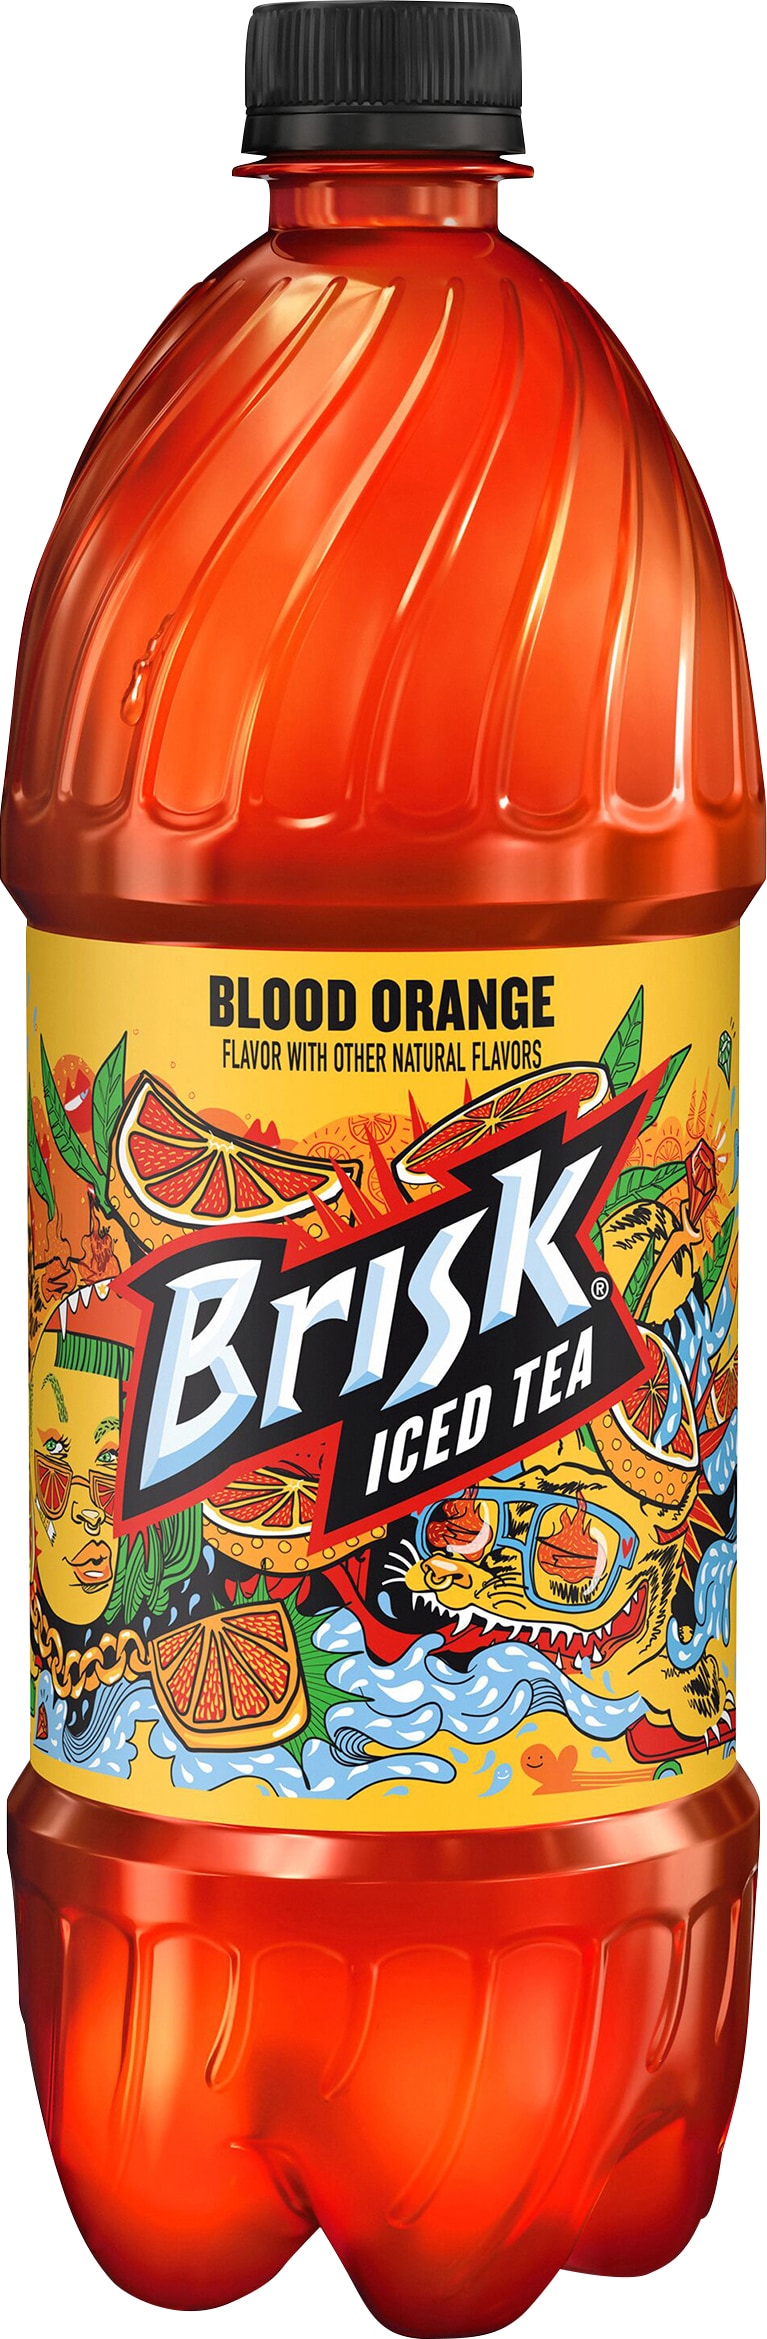 Brisk Blood Orange Tea Soft Drink - 1 Liter Bottle in the Soft Drinks  department at